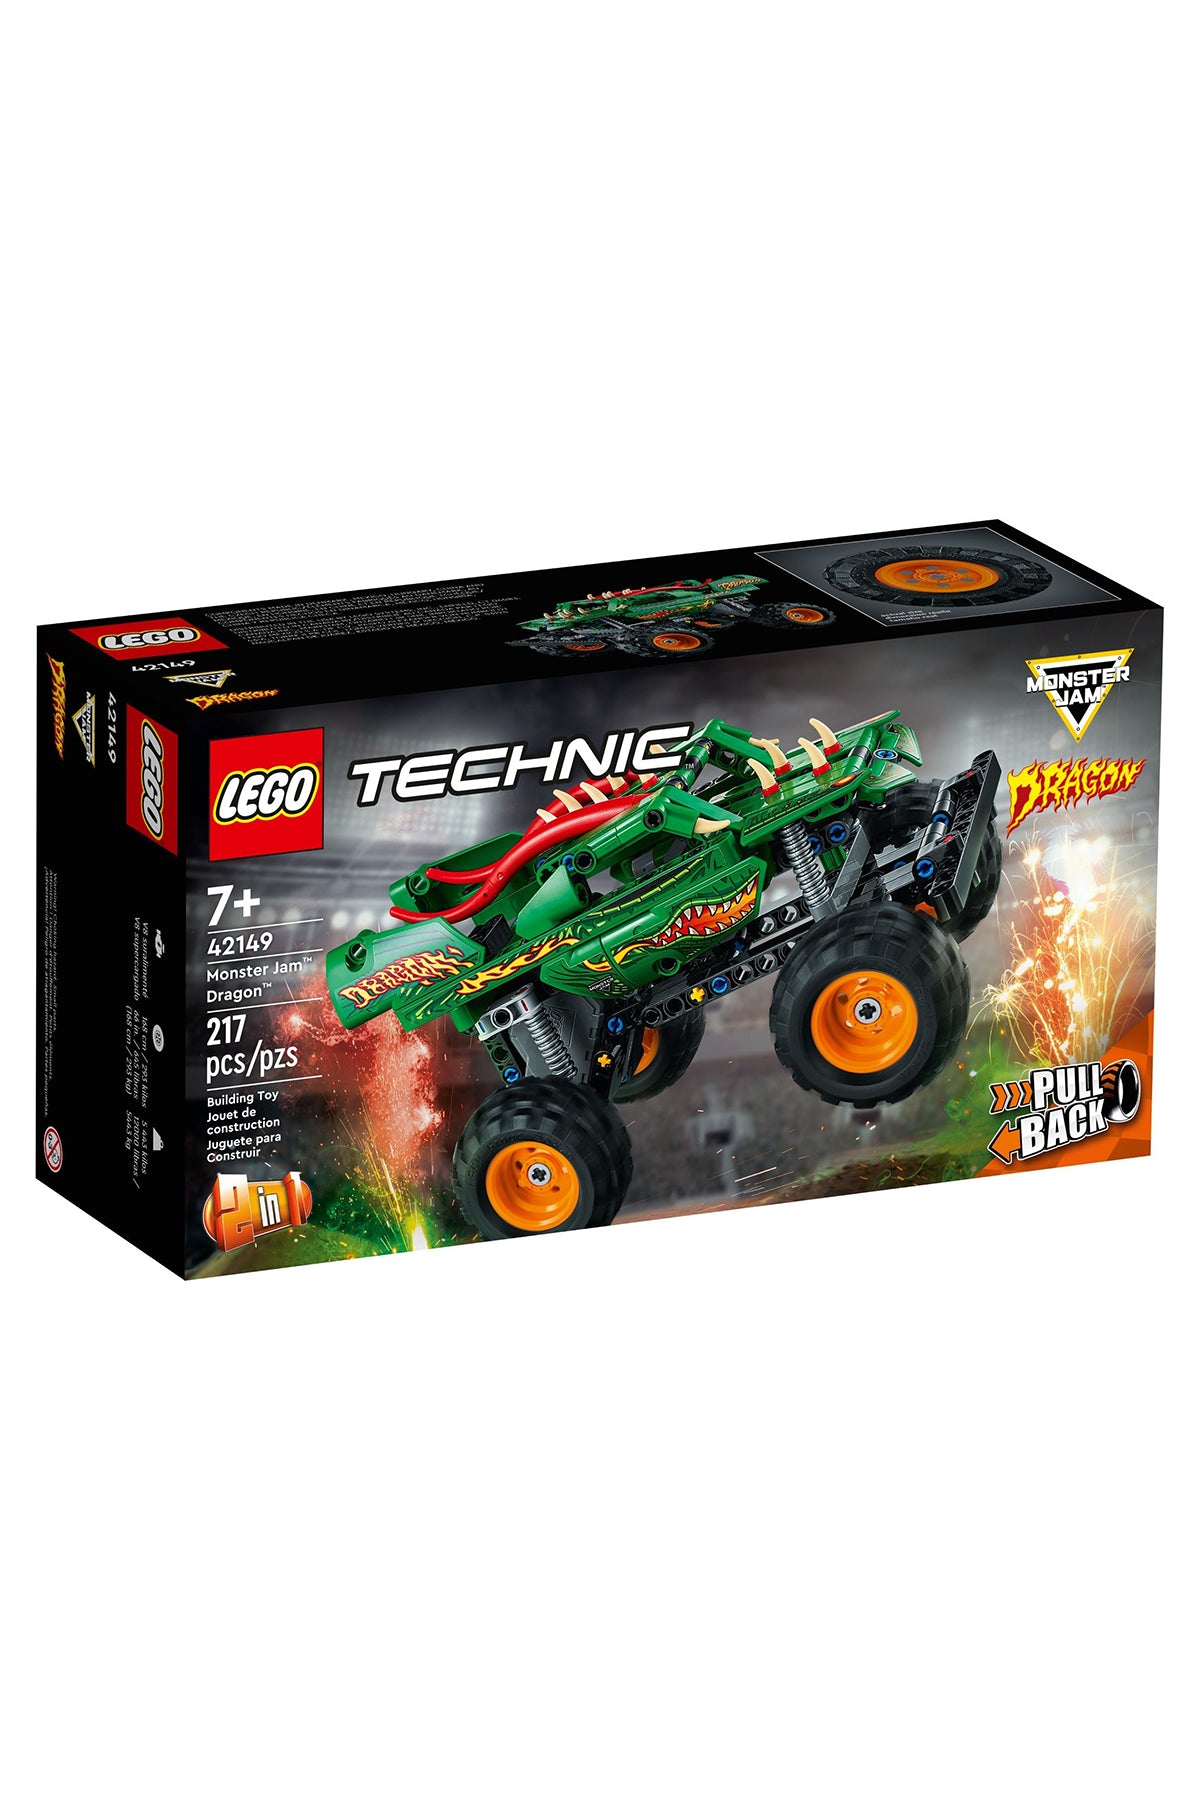 Lego Technic : 2-in-1 Monster Jam Dragon